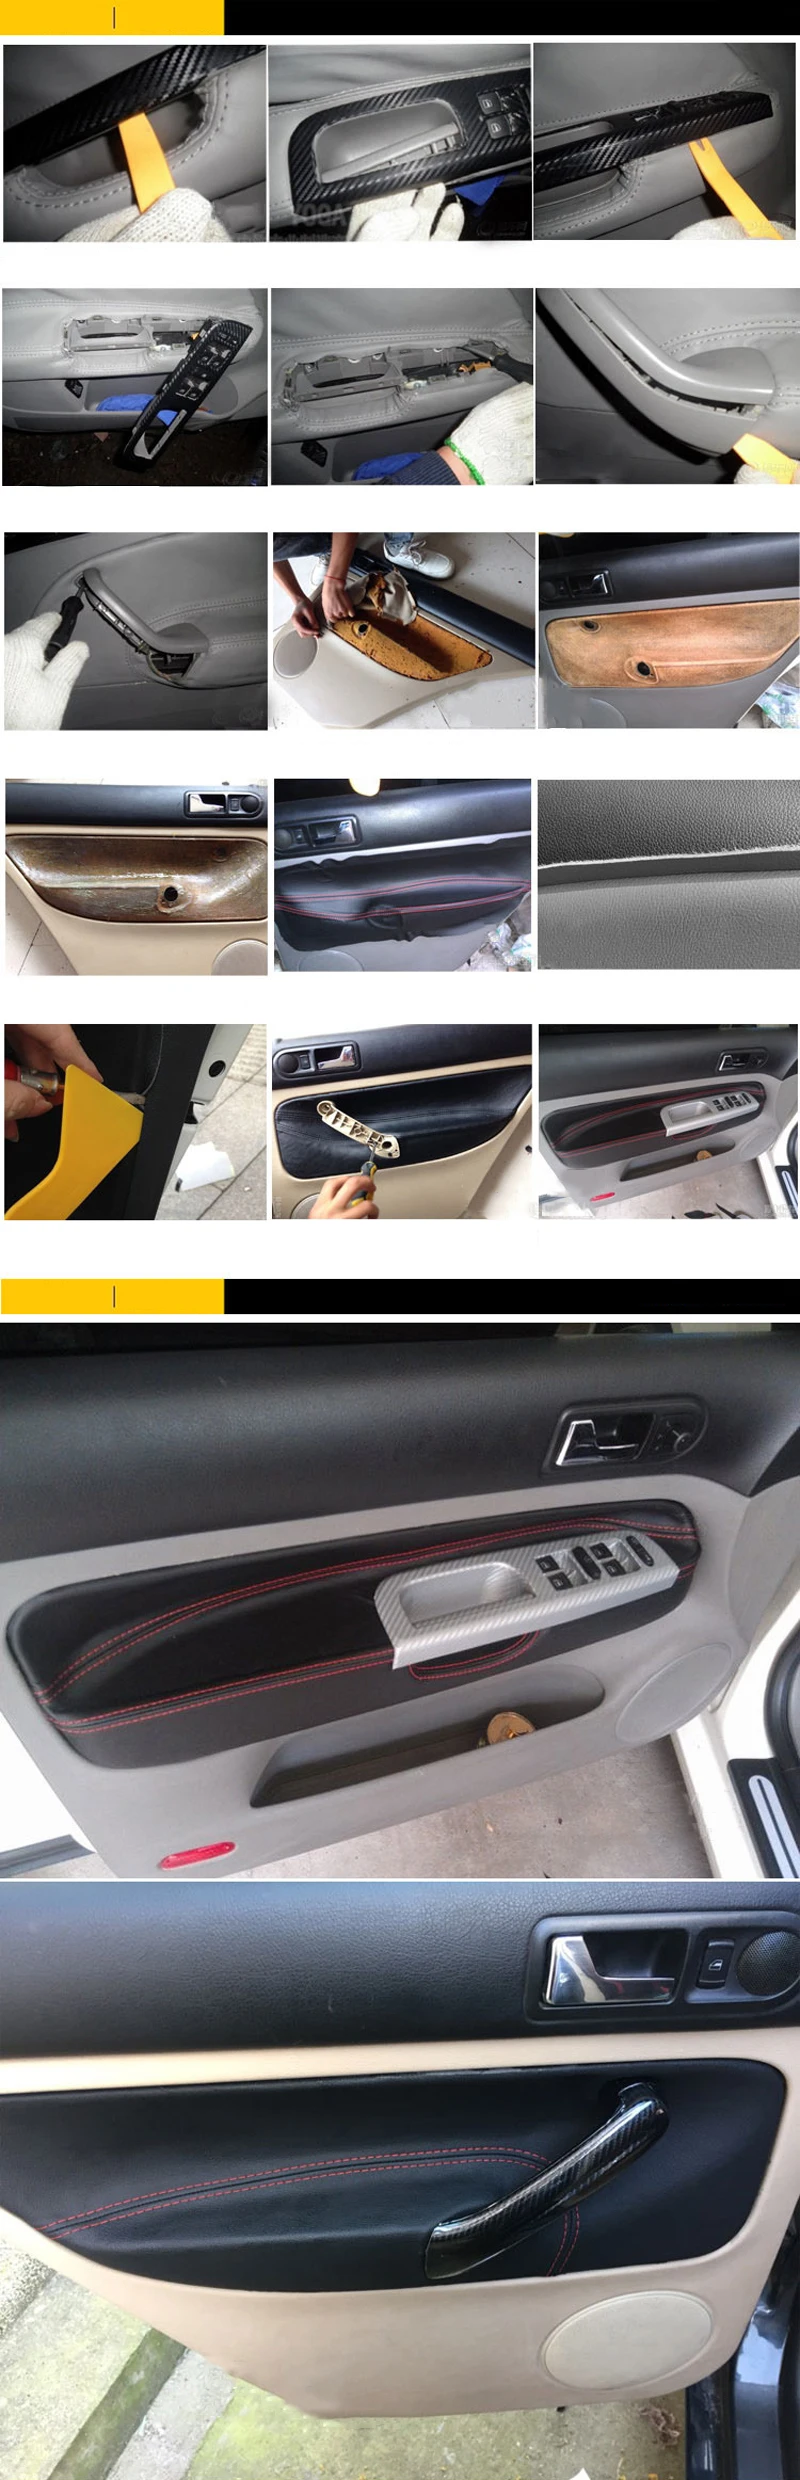 LHD панель подлокотника двери автомобиля из микрофибры покрытие отделка для VW Golf MK4 Bora Jetta 1998 1999 2000 2001 2002 2003 2004 2005 2006